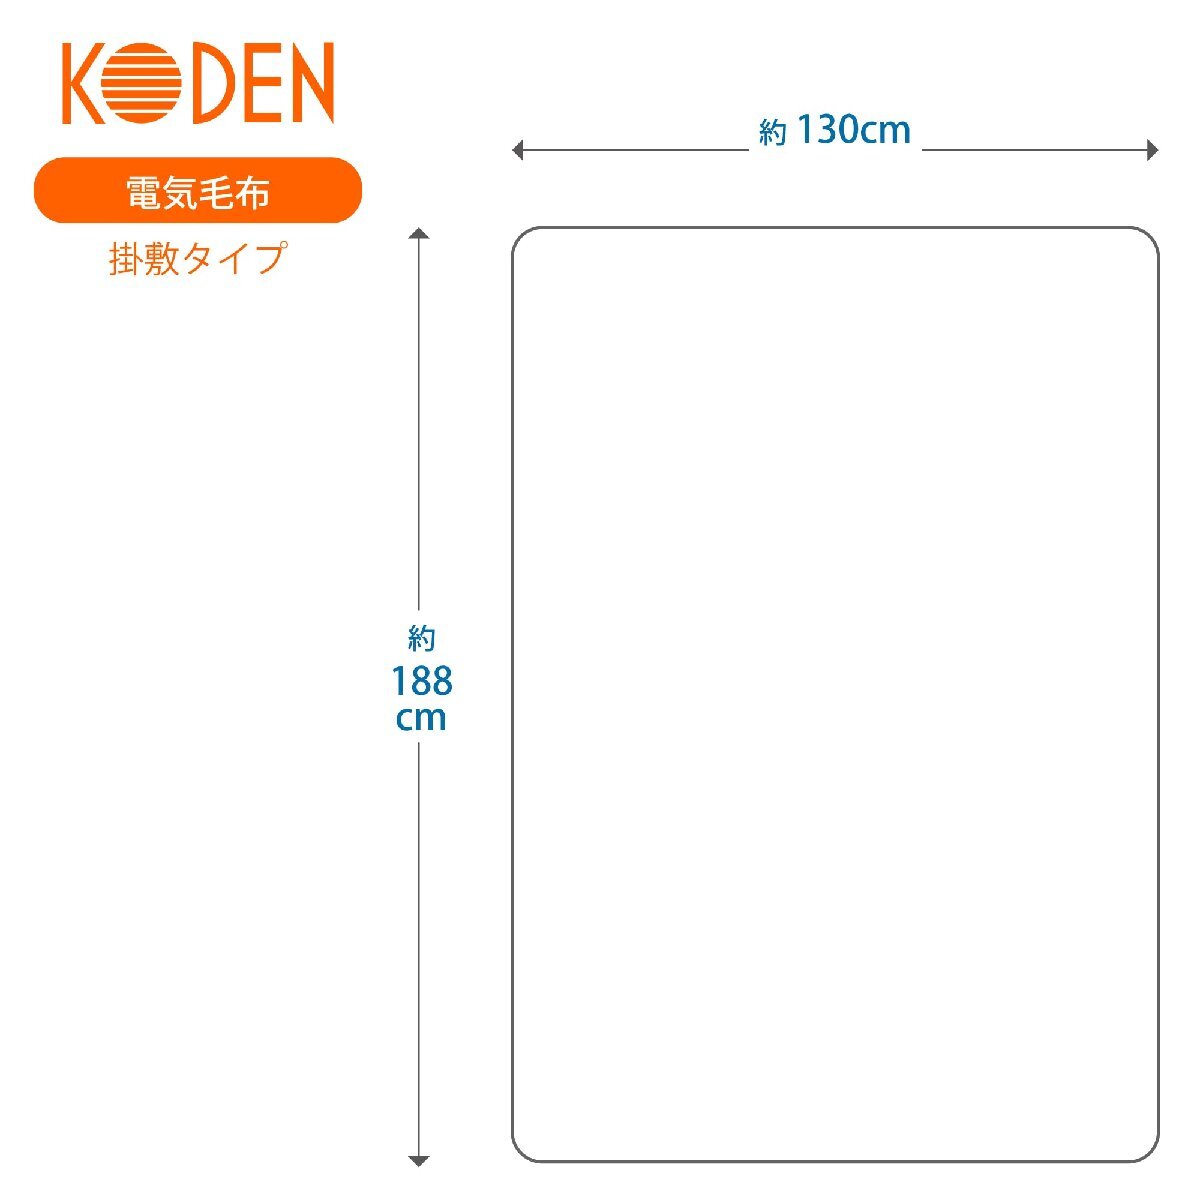 広電(KODEN) 電気毛布 掛け 敷き 188×130cm オレンジ 洗える ダニ退治 スライド温度調節 VWK552H-D_画像6